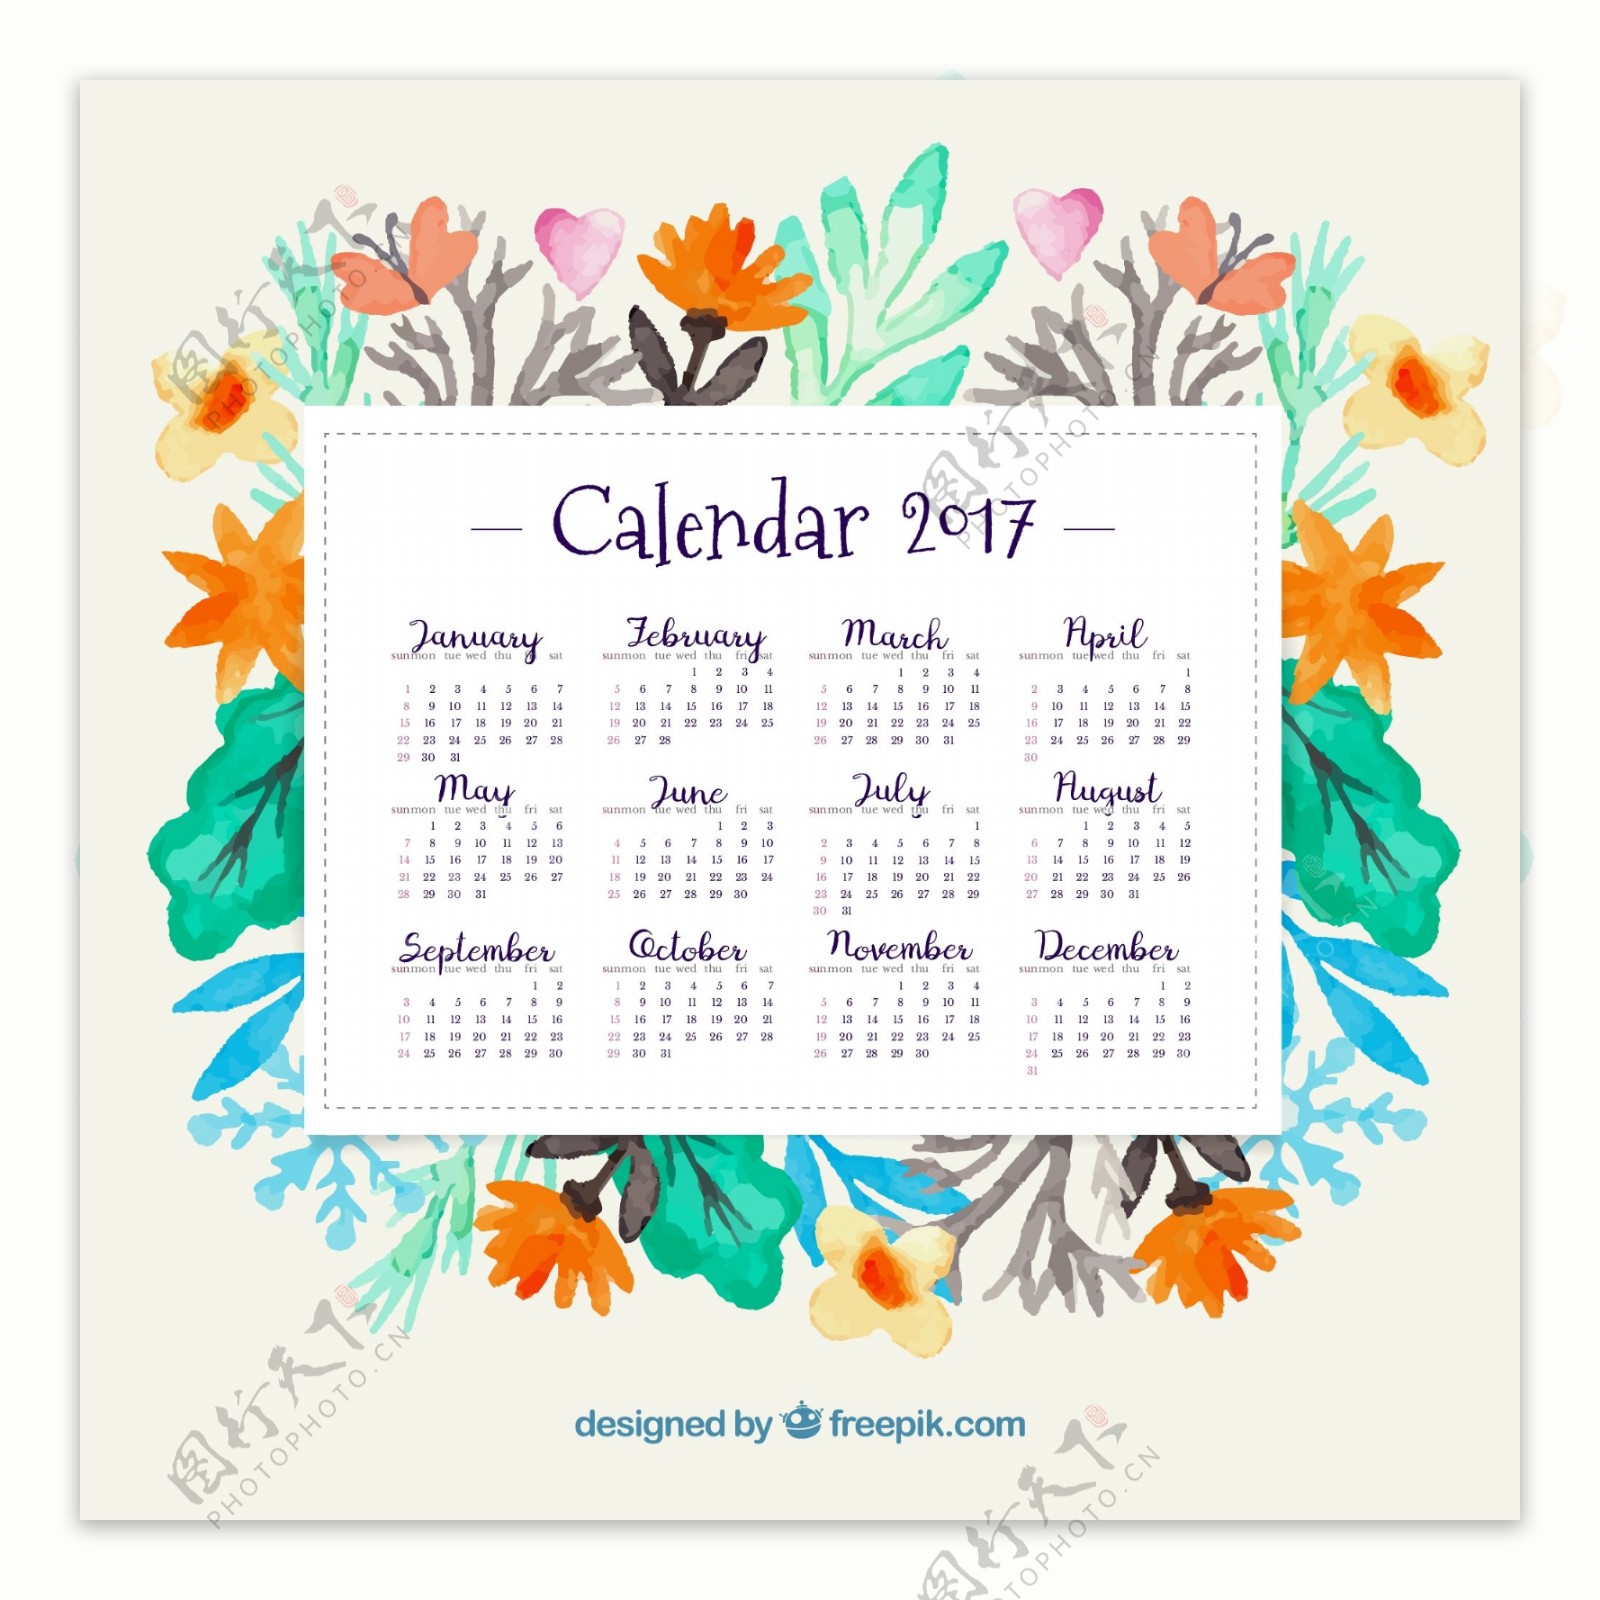 2017年日历与水彩花卉